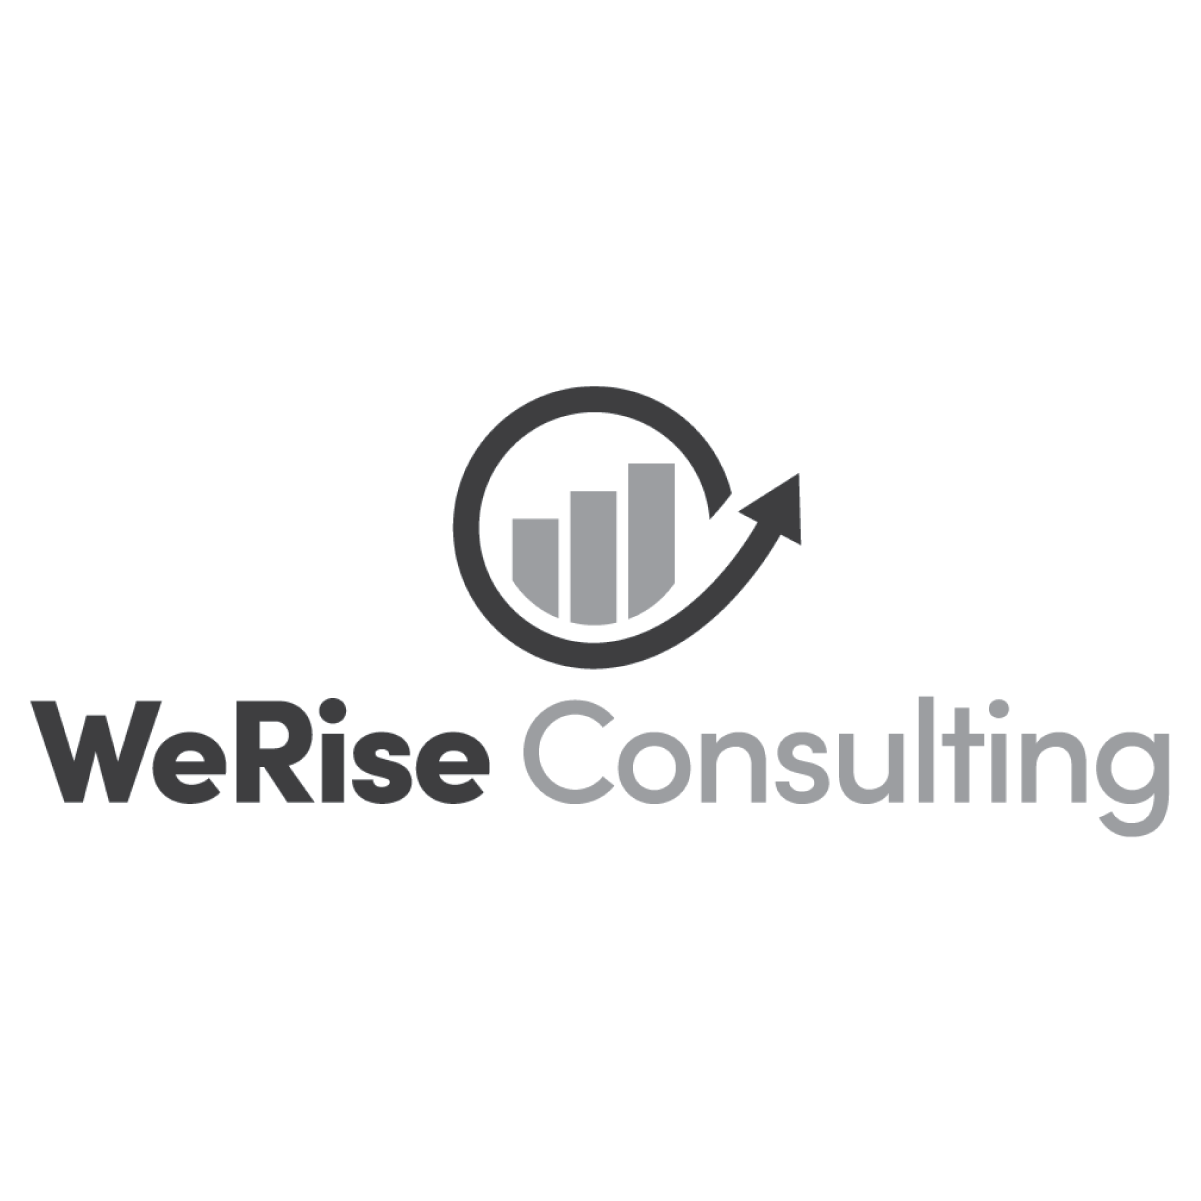 WeRise Consulting